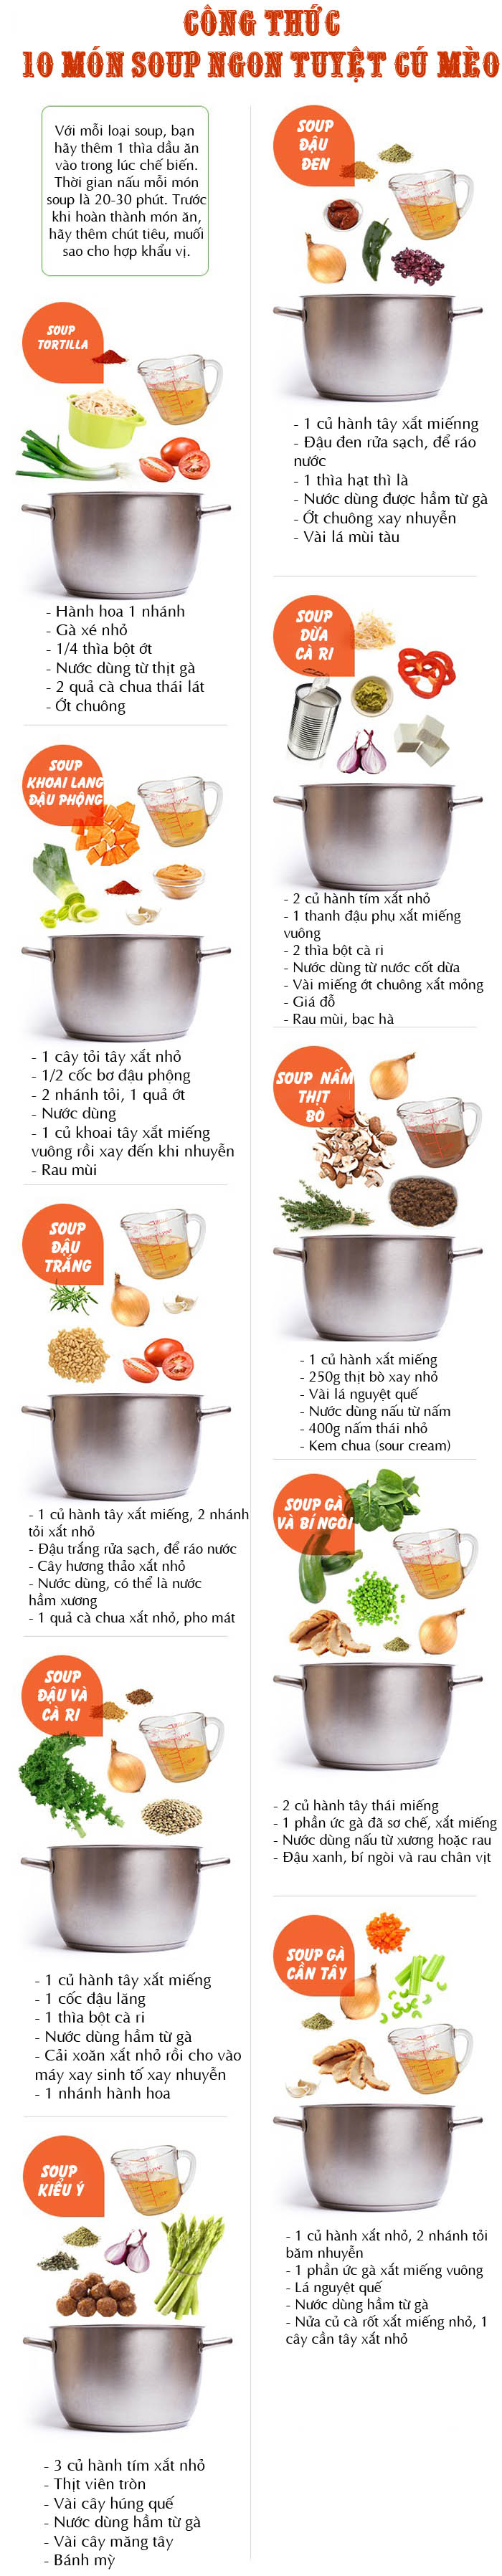 Công thức nấu 10 món soup “ăn một lần là nhớ cả đời” - 1